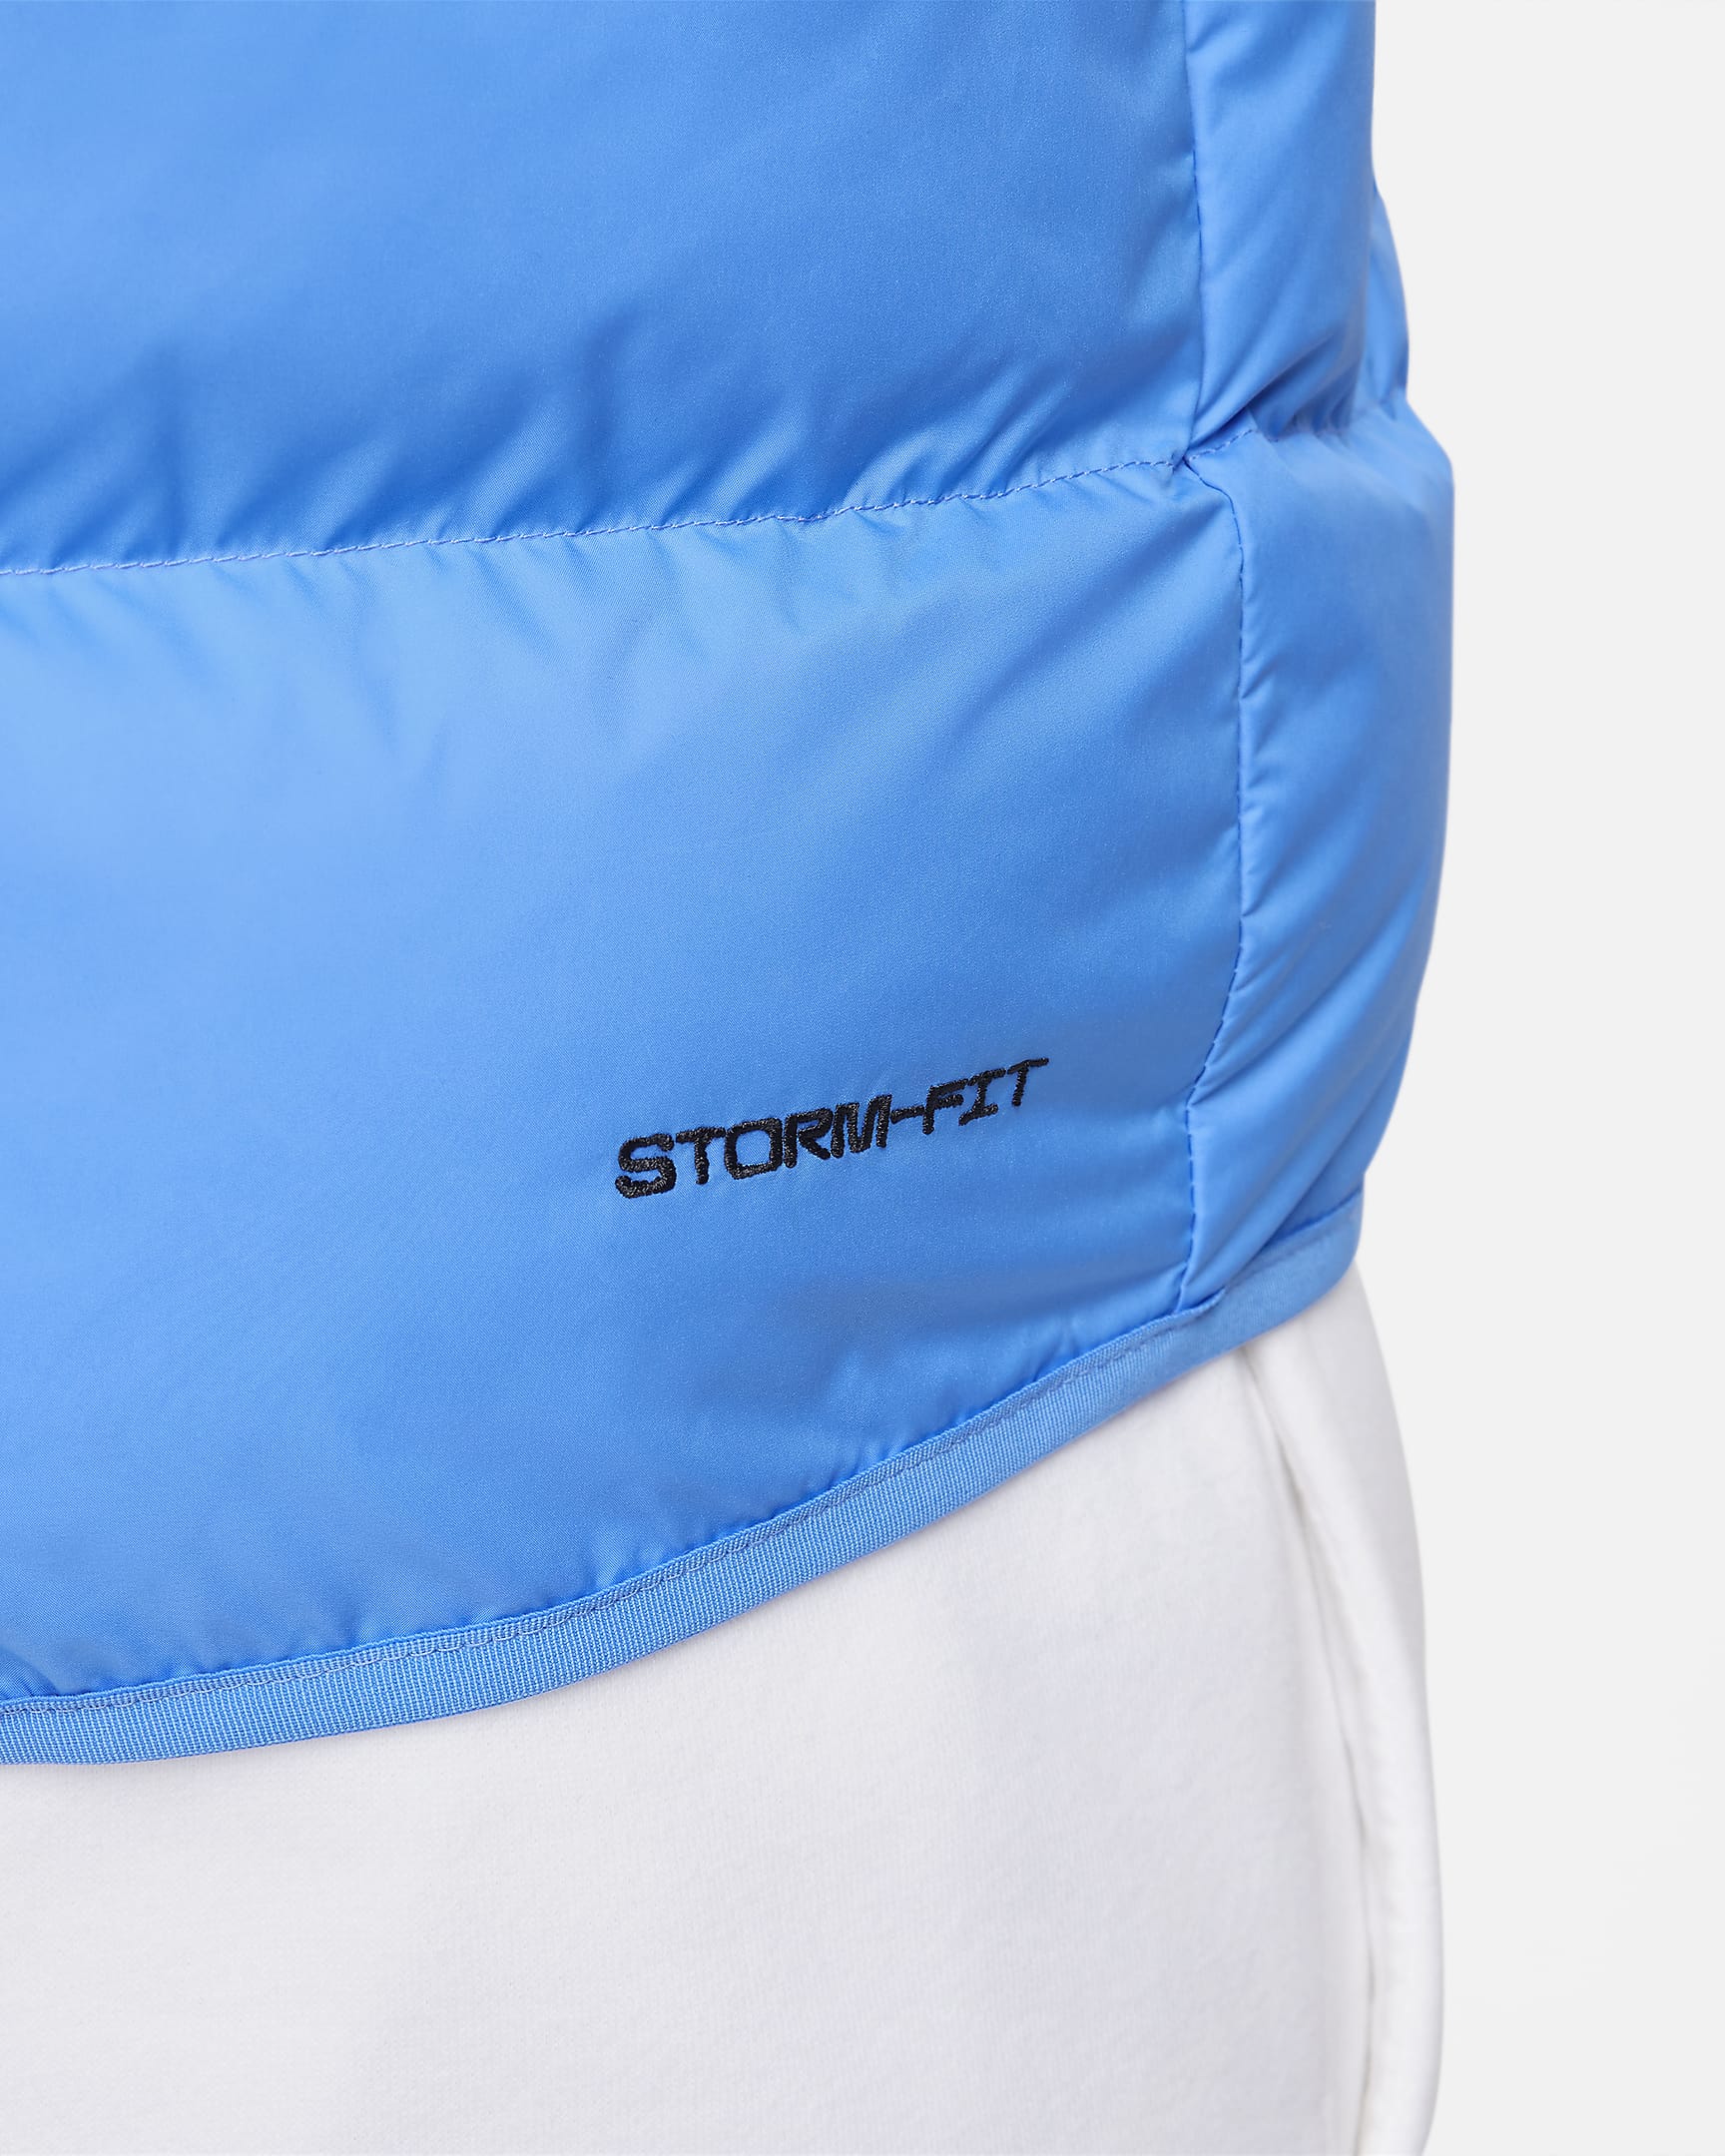 Nike Storm-FIT Windrunner Men's Insulated Gilet. Nike SK